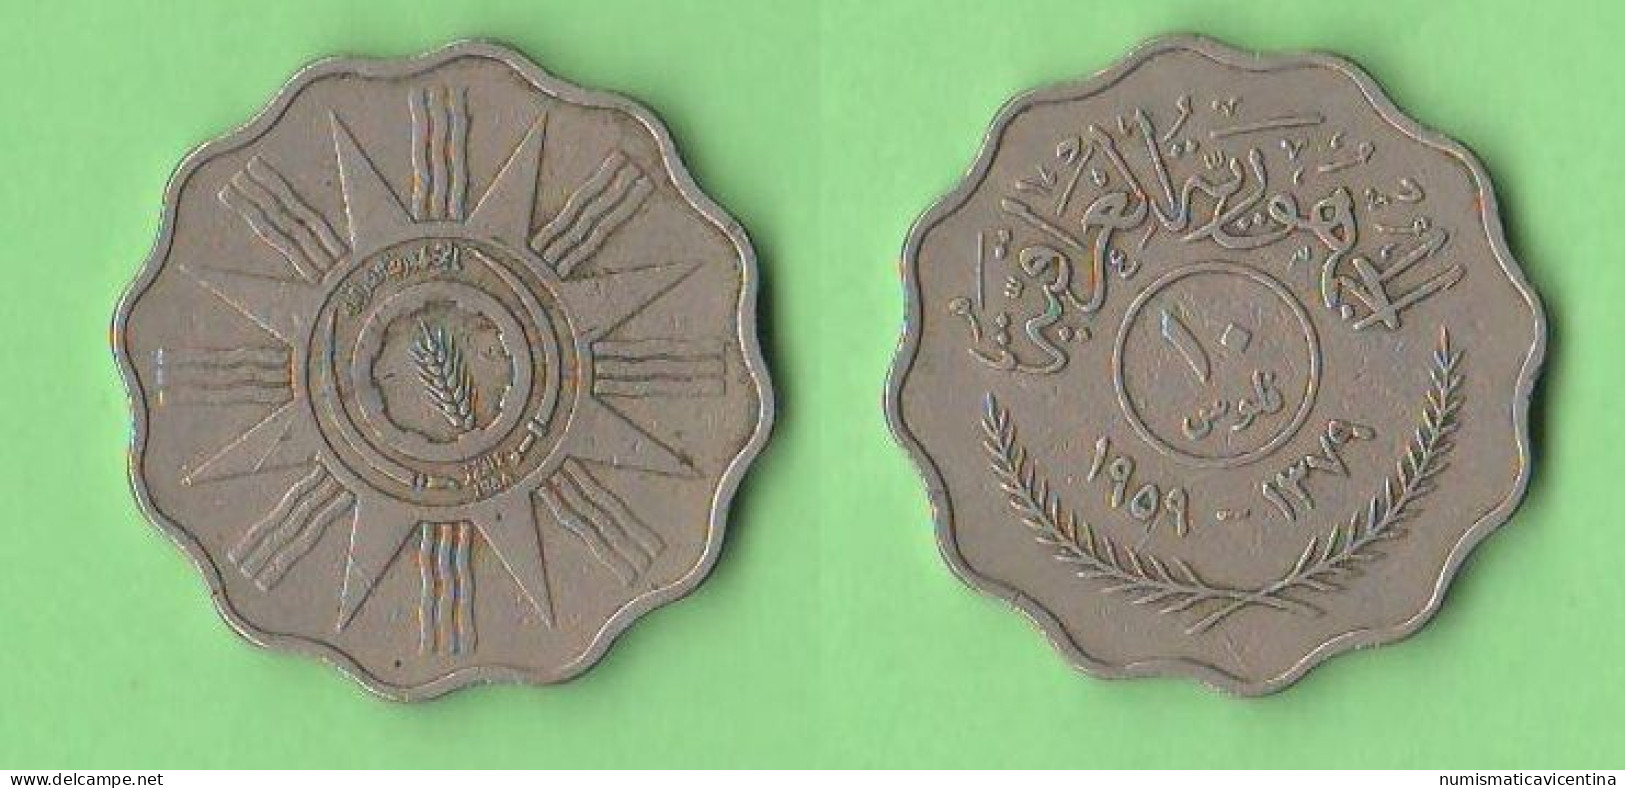 Iraq 10 Fils 1959 Nickel Coins - Iraq